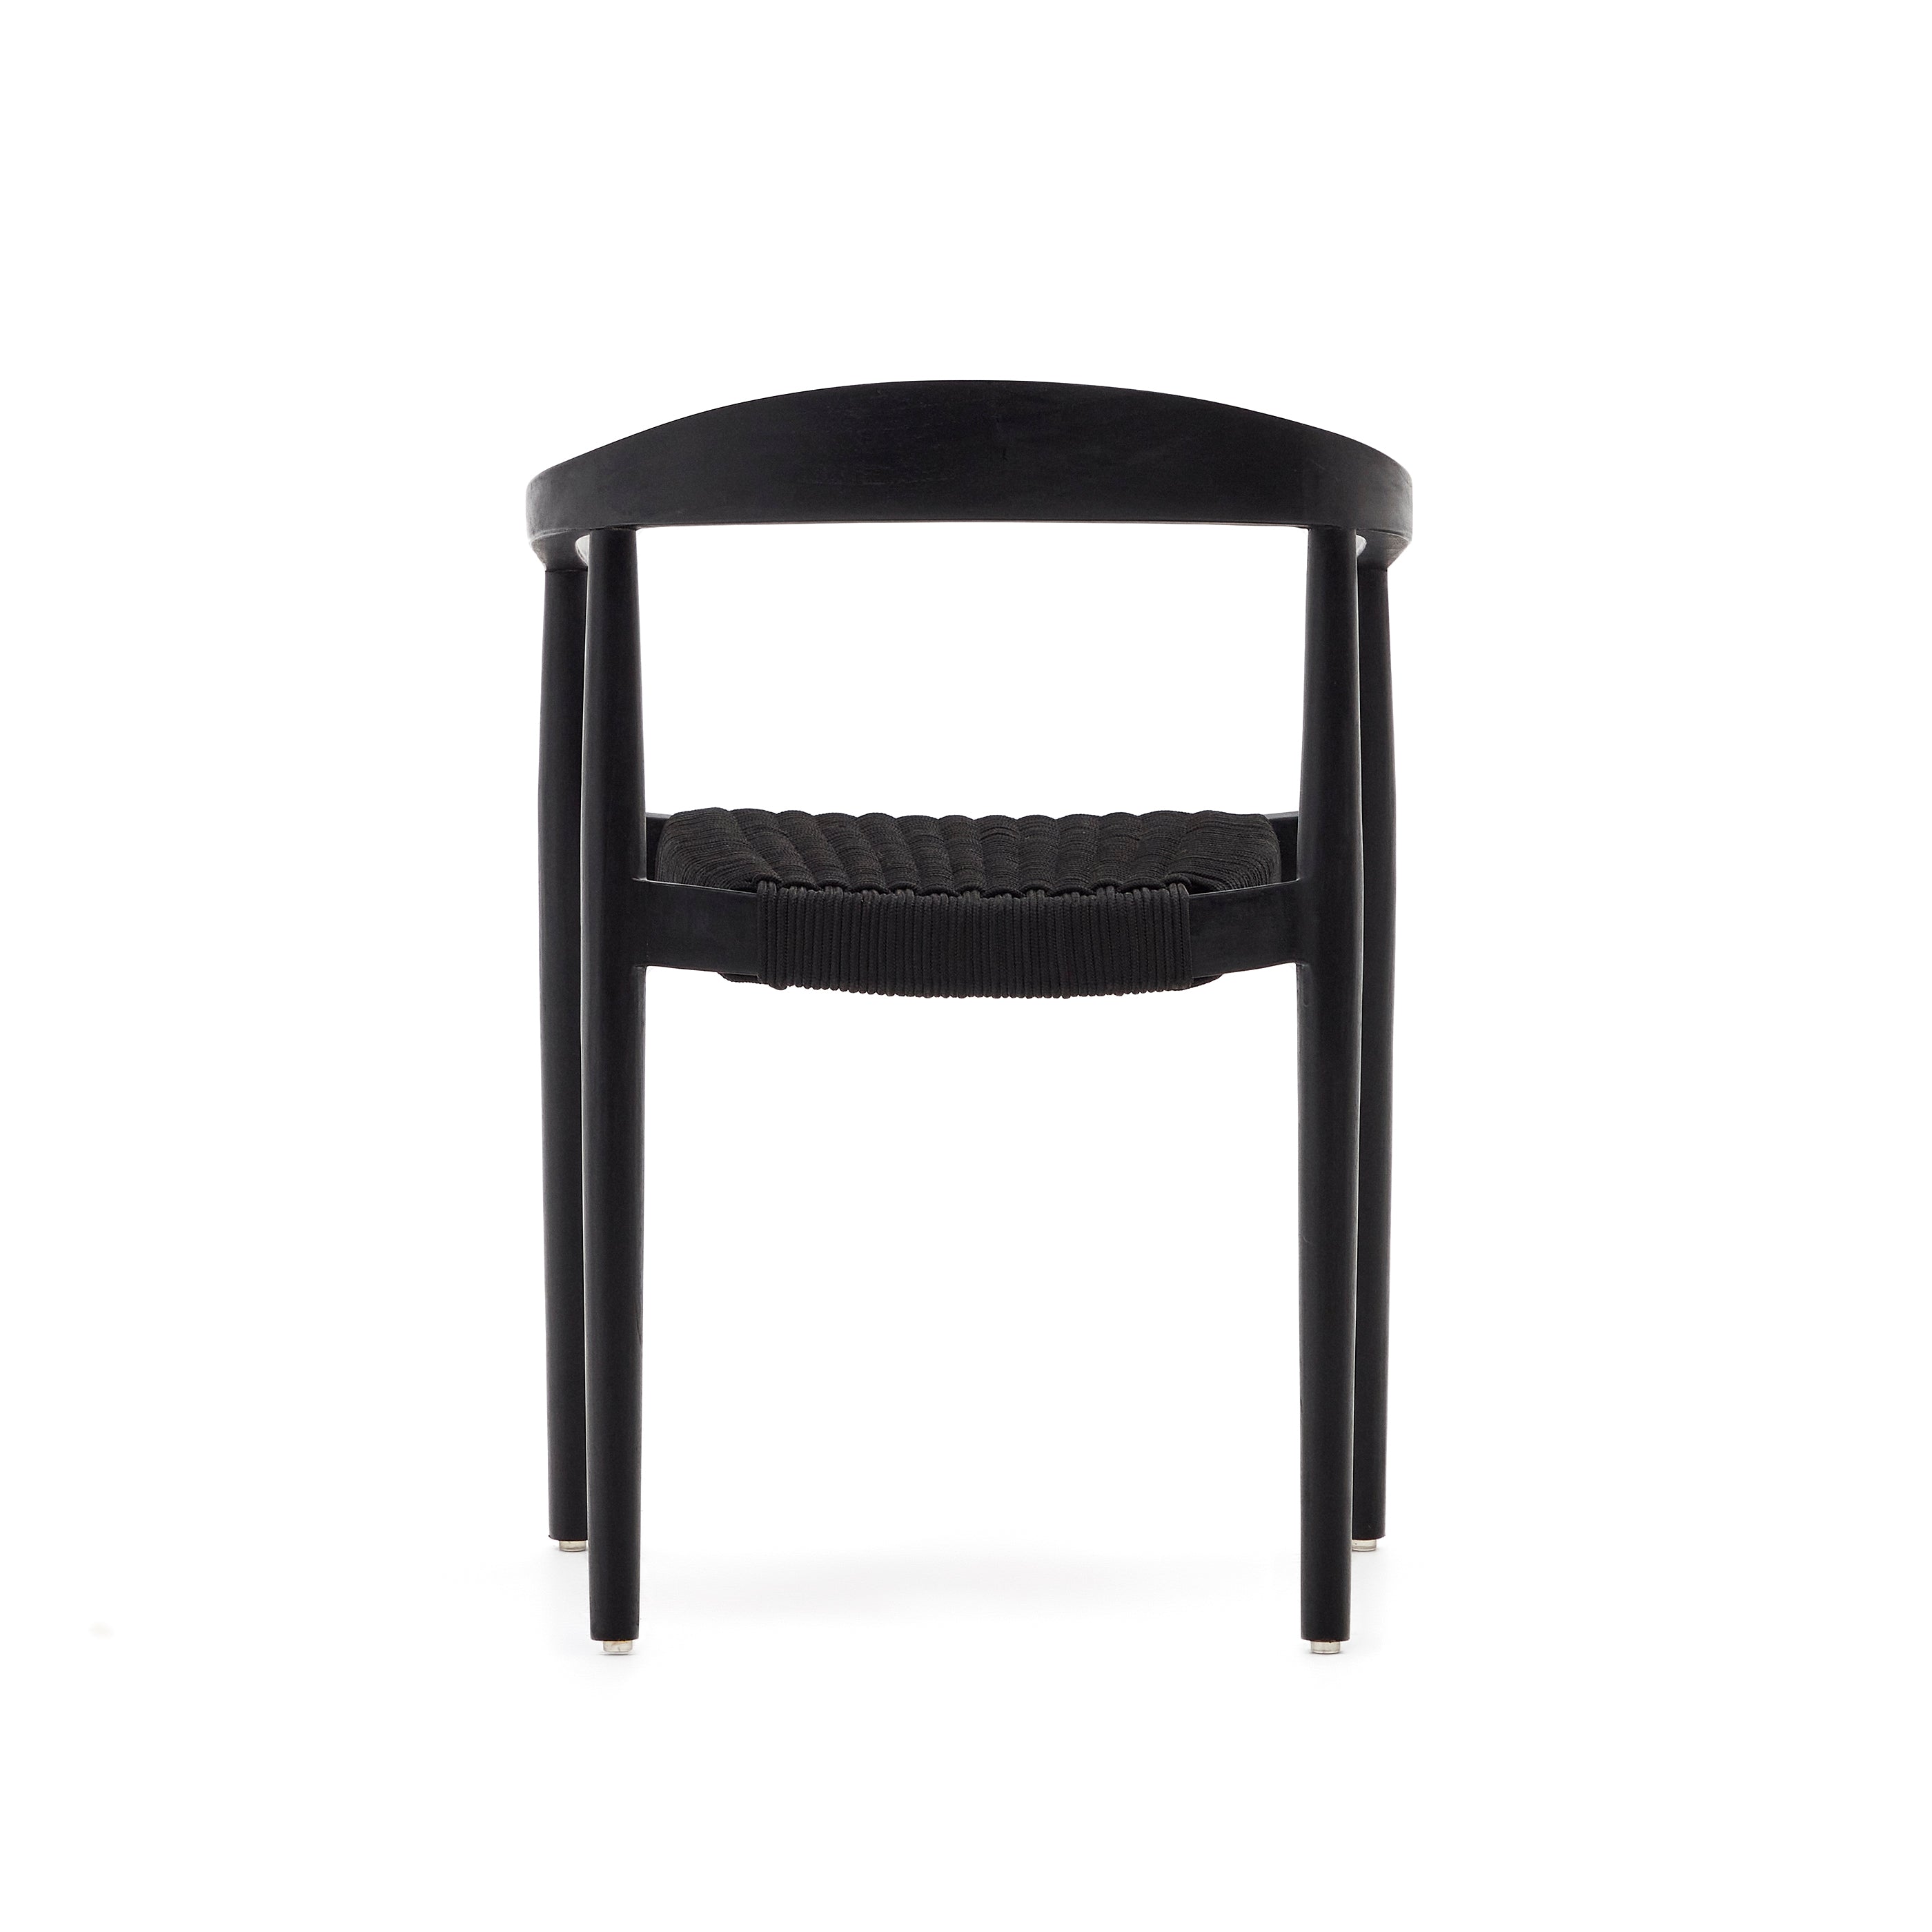 Ydalia egymásba rakható kültéri szék tömör teakfából, fekete kivitelben és fekete kötéllel